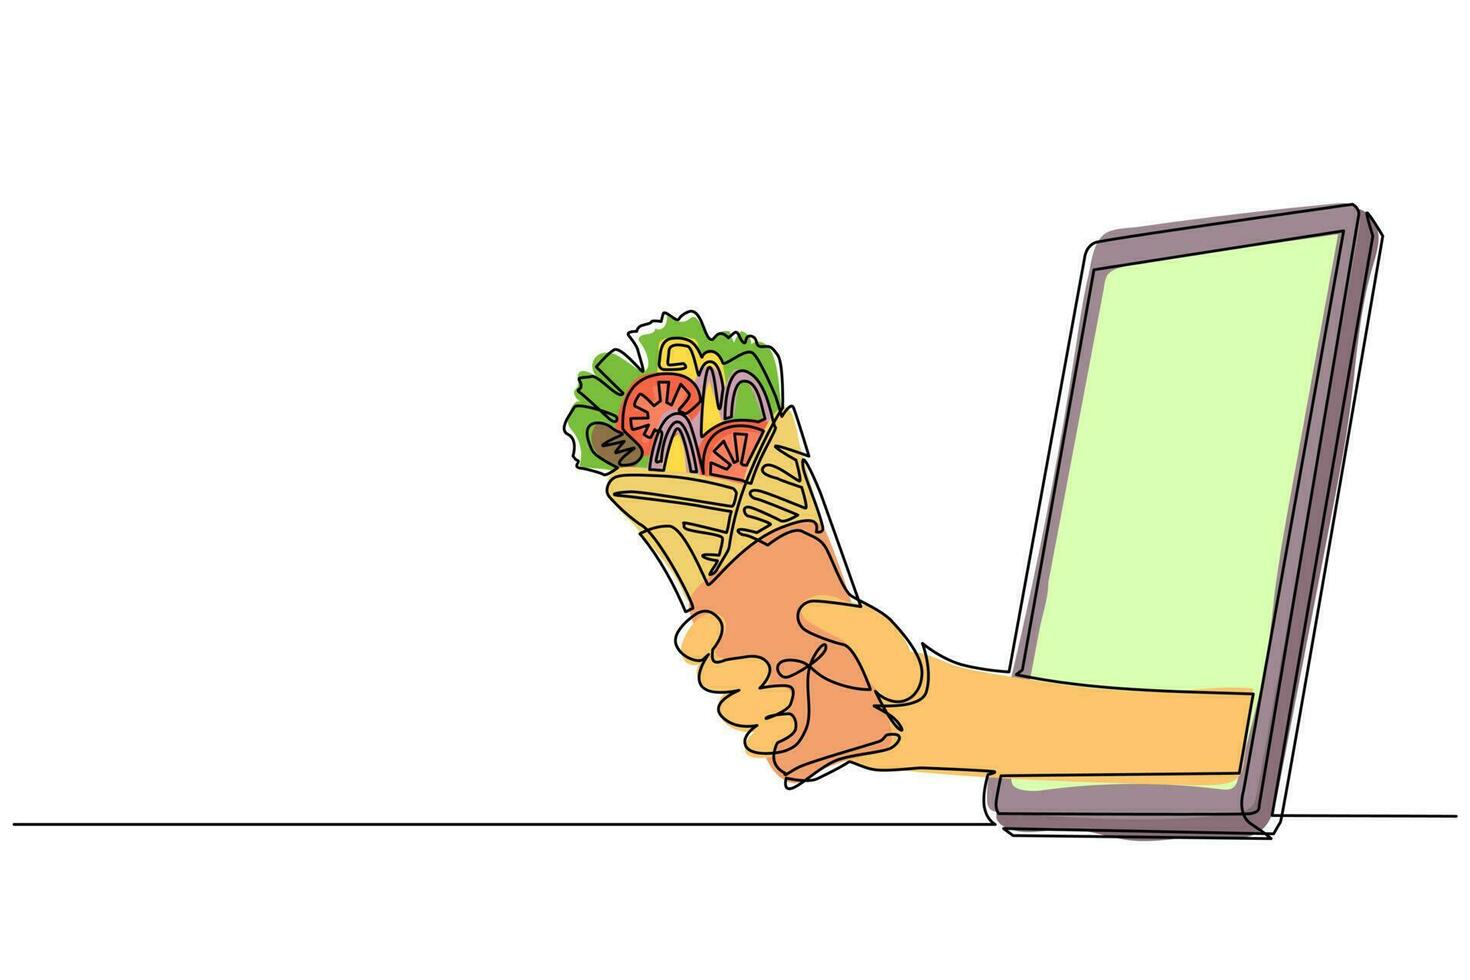 mano de dibujo de una sola línea continua sosteniendo shawarma a través del teléfono móvil. concepto de comida en línea de entrega de pedidos de restaurante. aplicación para teléfonos inteligentes. ilustración de vector de diseño gráfico de dibujo de una línea